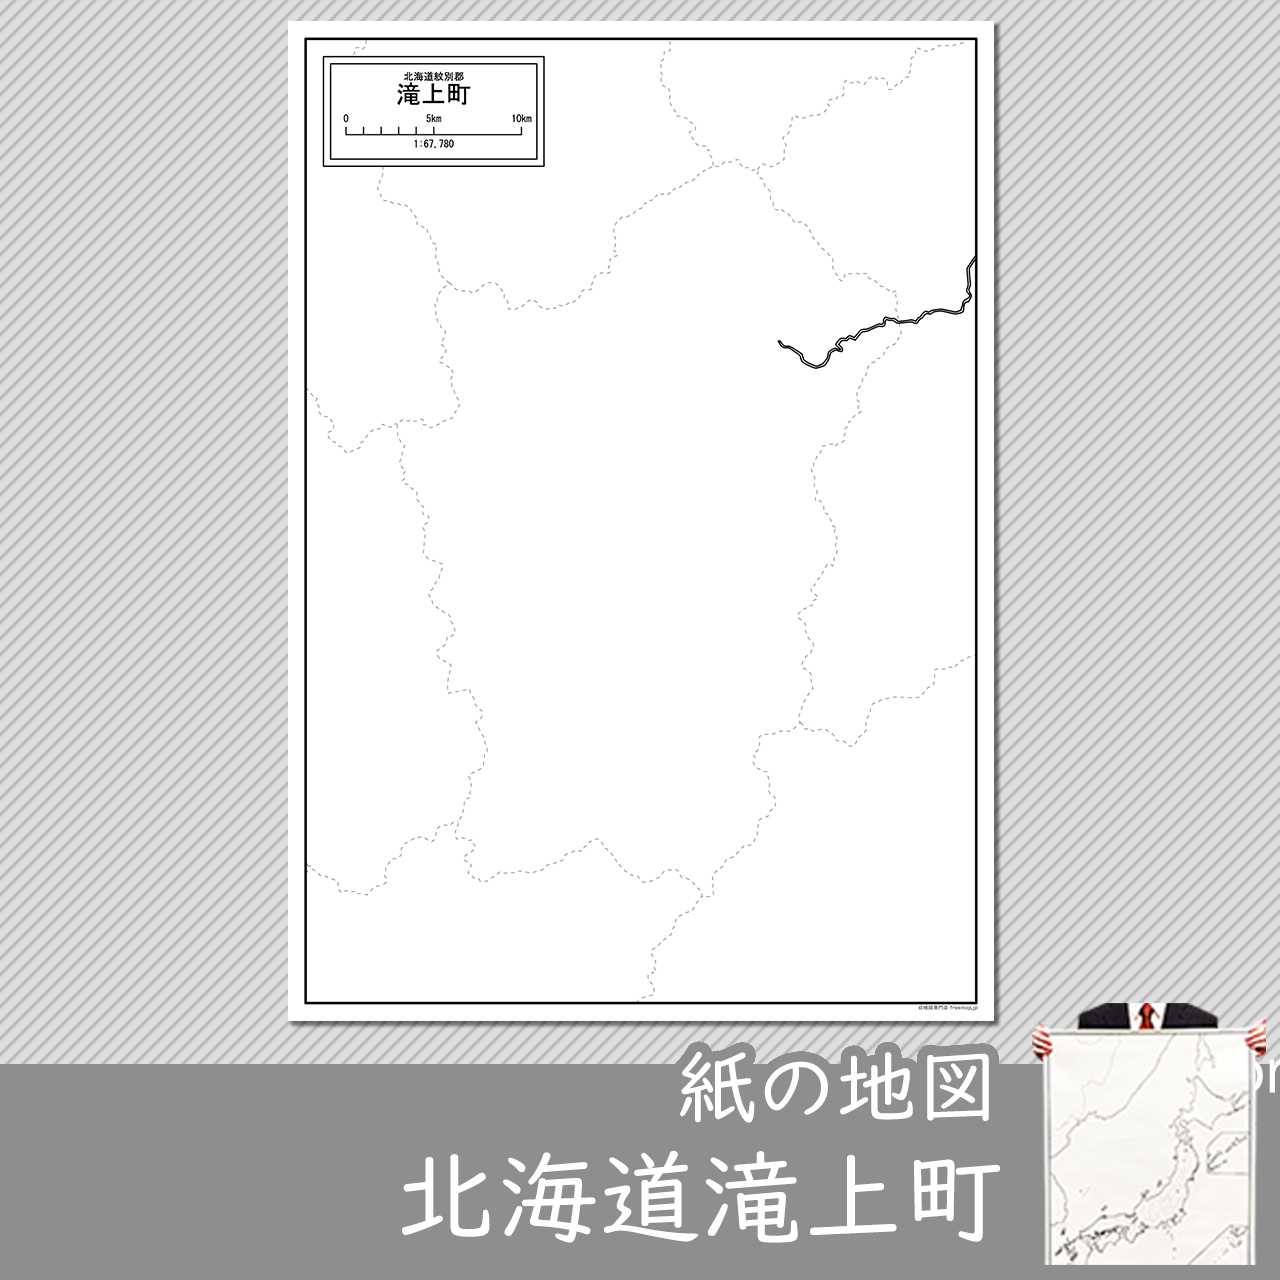 滝上町の紙の白地図のサムネイル